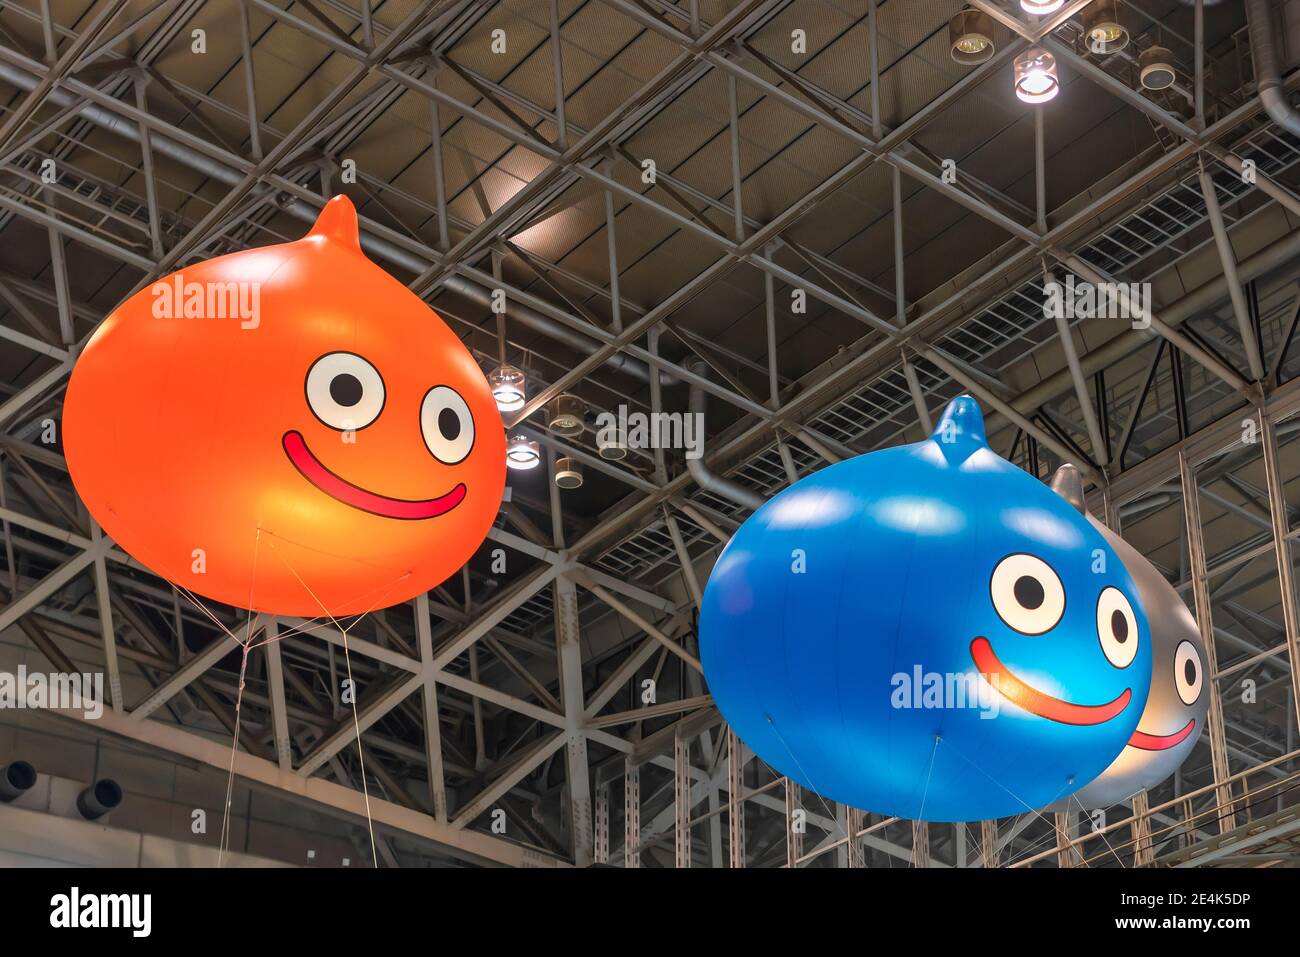 chiba, giappone - dicembre 22 2018: Enormi palloncini gonfiabili raffiguranti Slime, la mascotte del gioco di ruolo Dragon quest video galleggiante sotto il Foto Stock